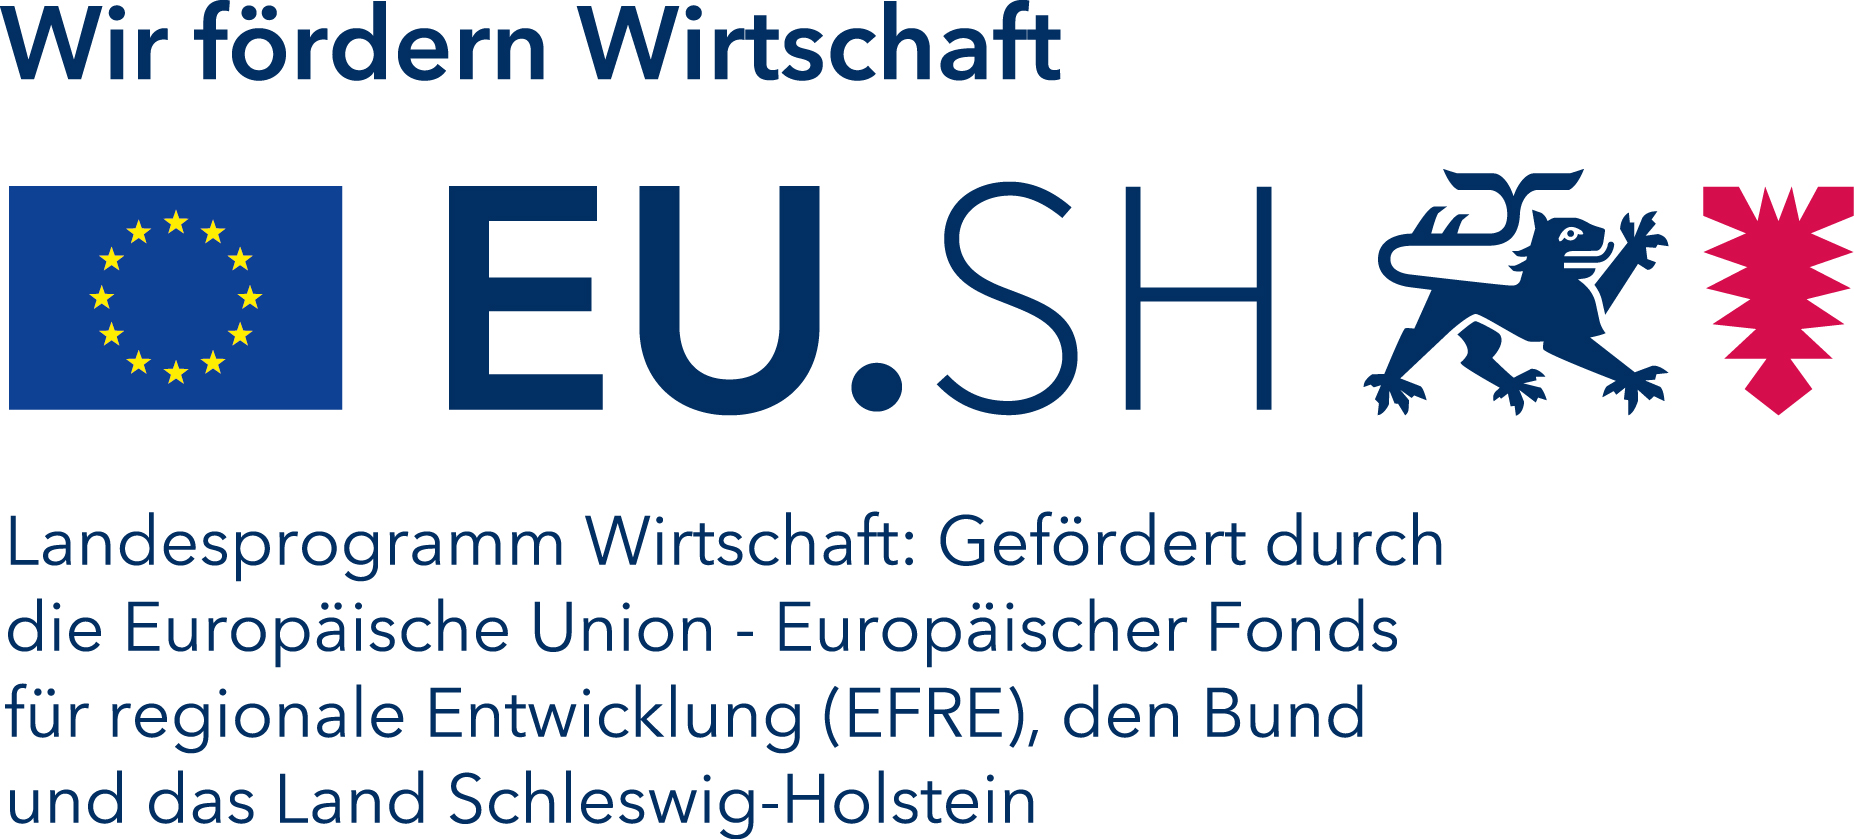 wtsh-logo-deutsch